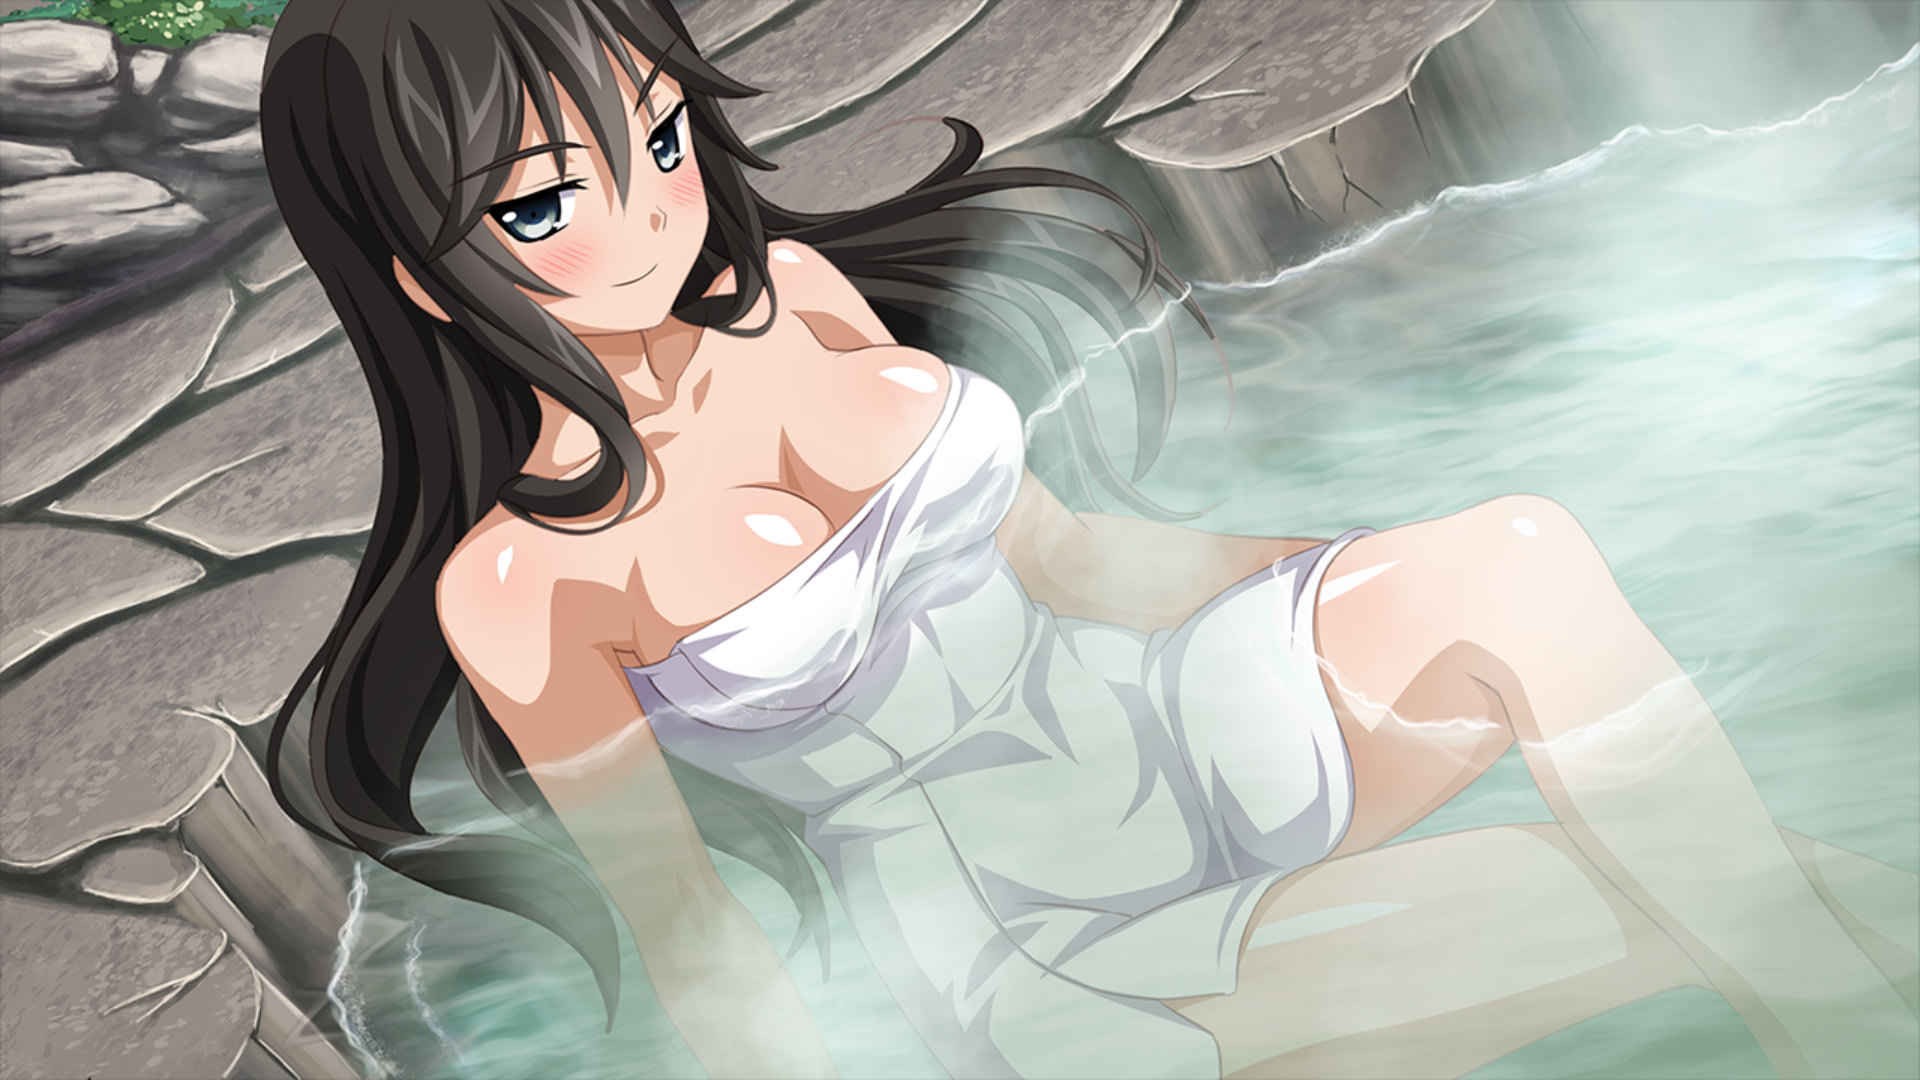 Anime 1920x1080 Sakura Spirit ecchi anime girls big boobs water dark hair anime boobs dark eyes onsen hot spring towel Wanaca bathing sitting